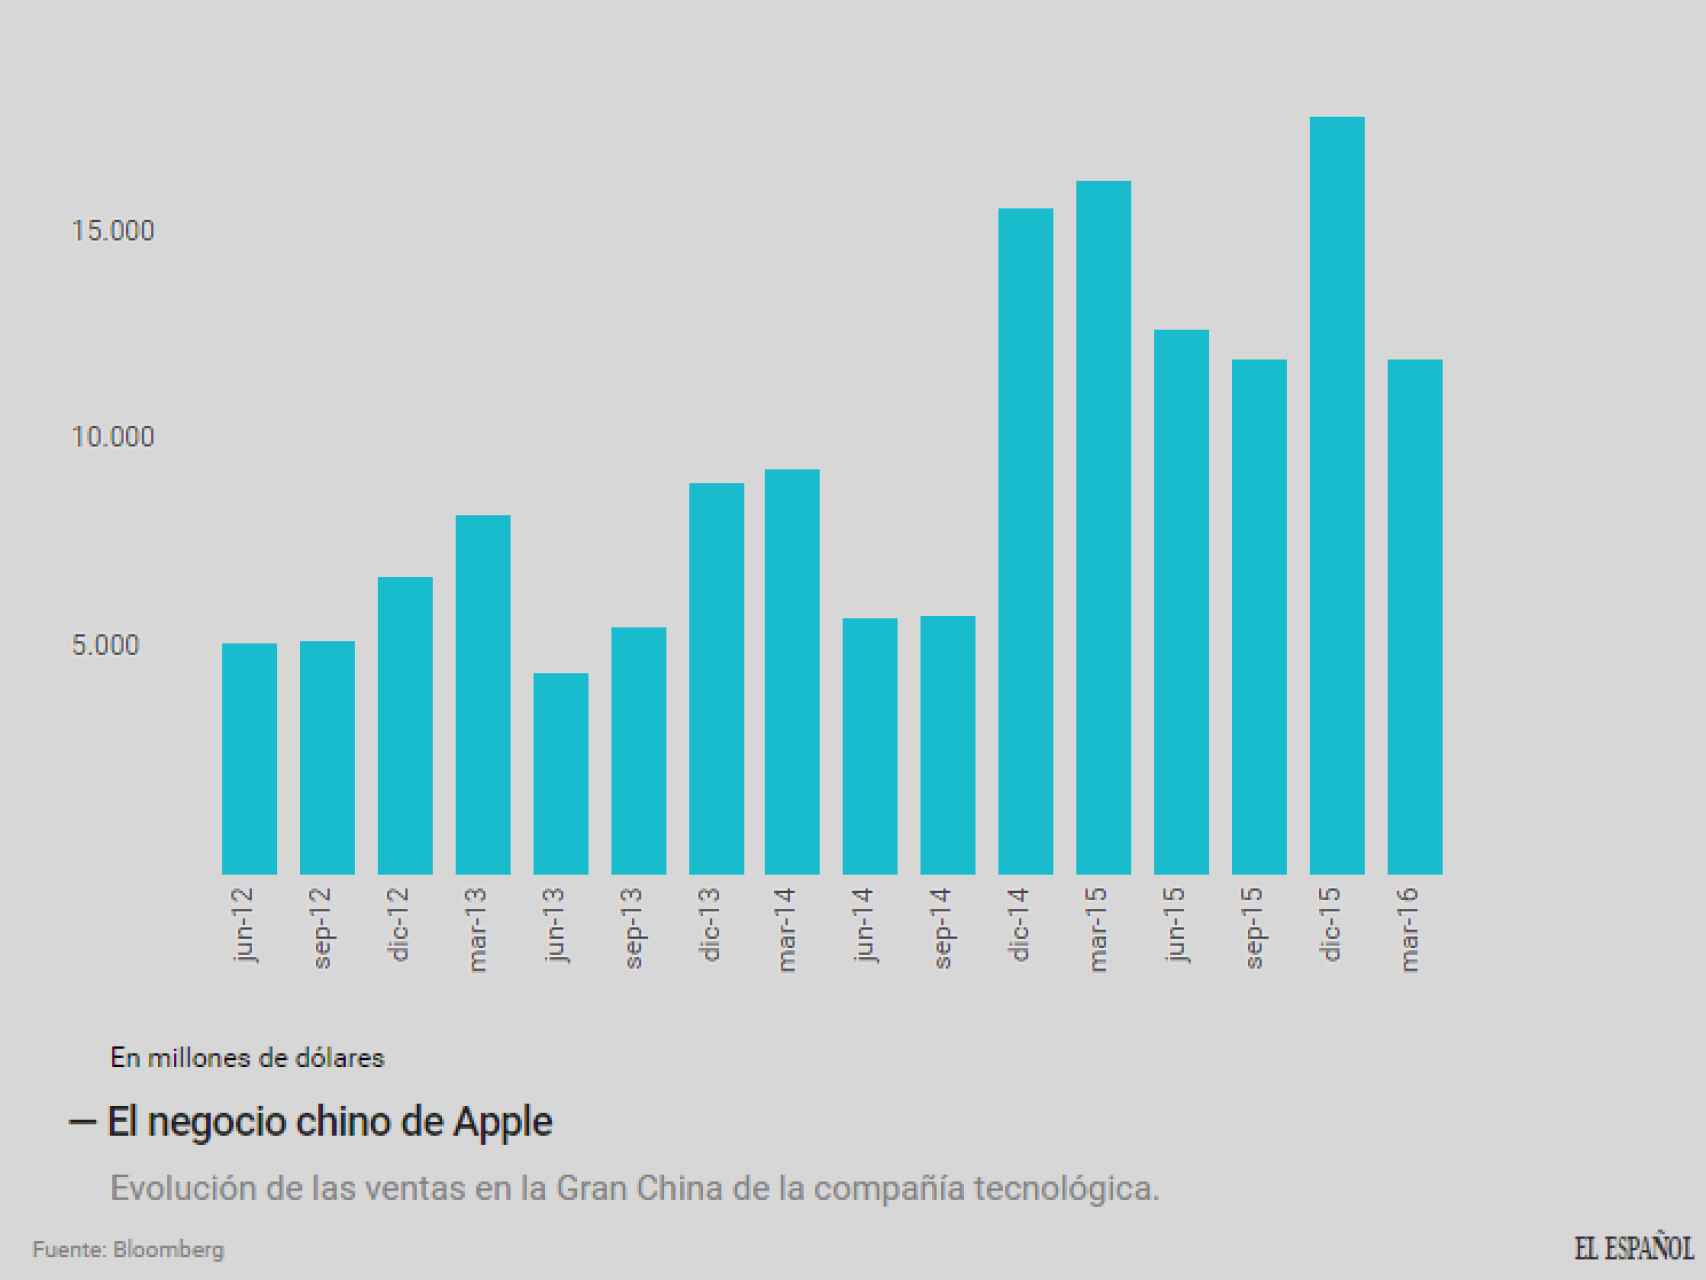 Evolución de las ventas en China de Apple.